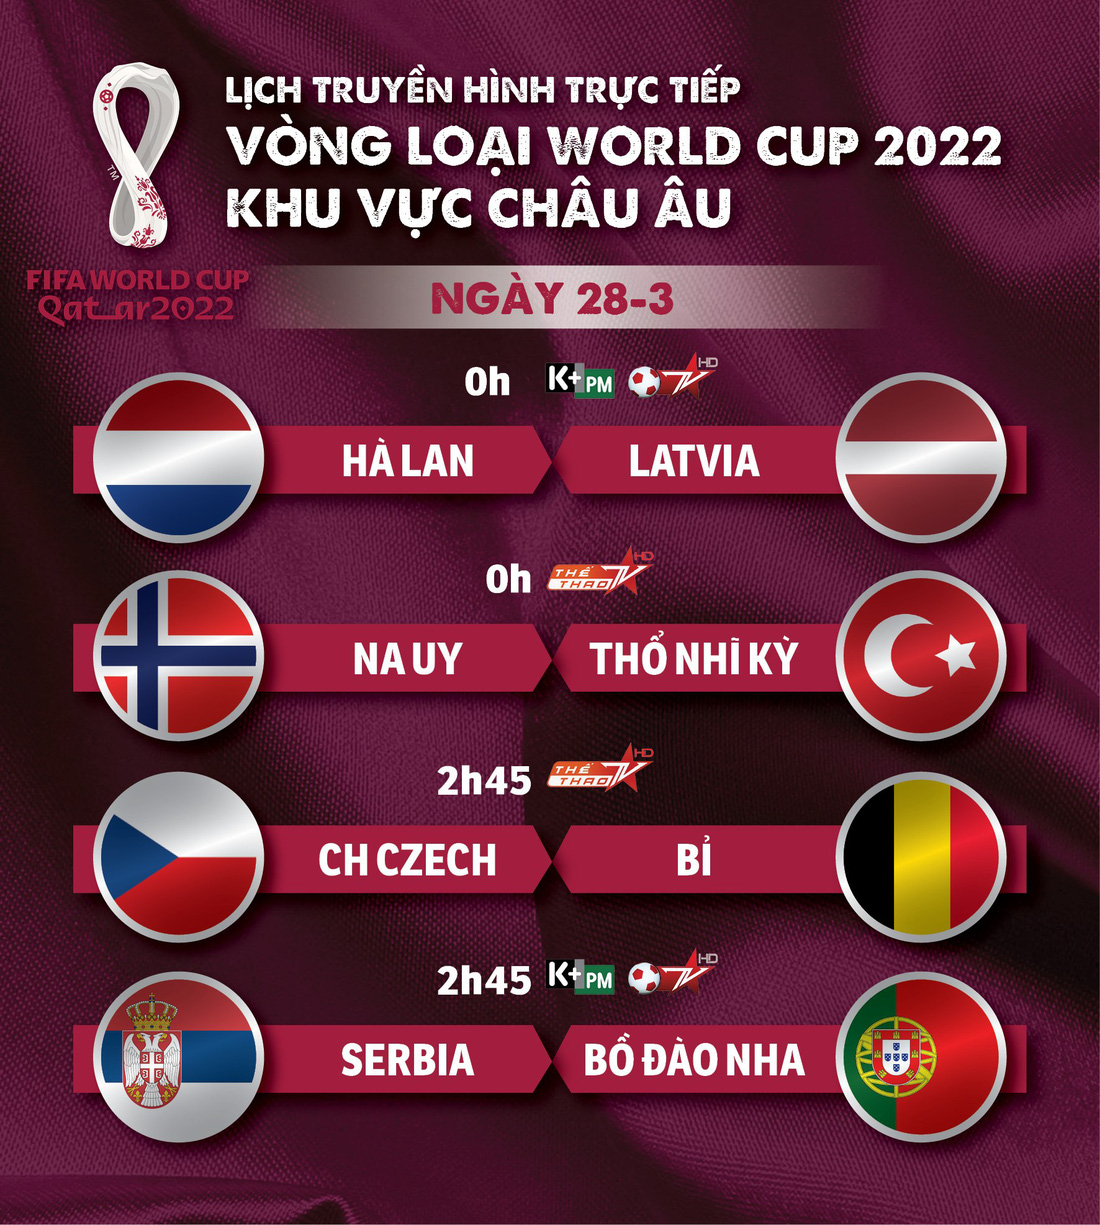 Lịch trực tiếp vòng loại World Cup 2022 châu Âu: Hà Lan, Bỉ, Bồ Đào Nha thi đấu - Ảnh 1.